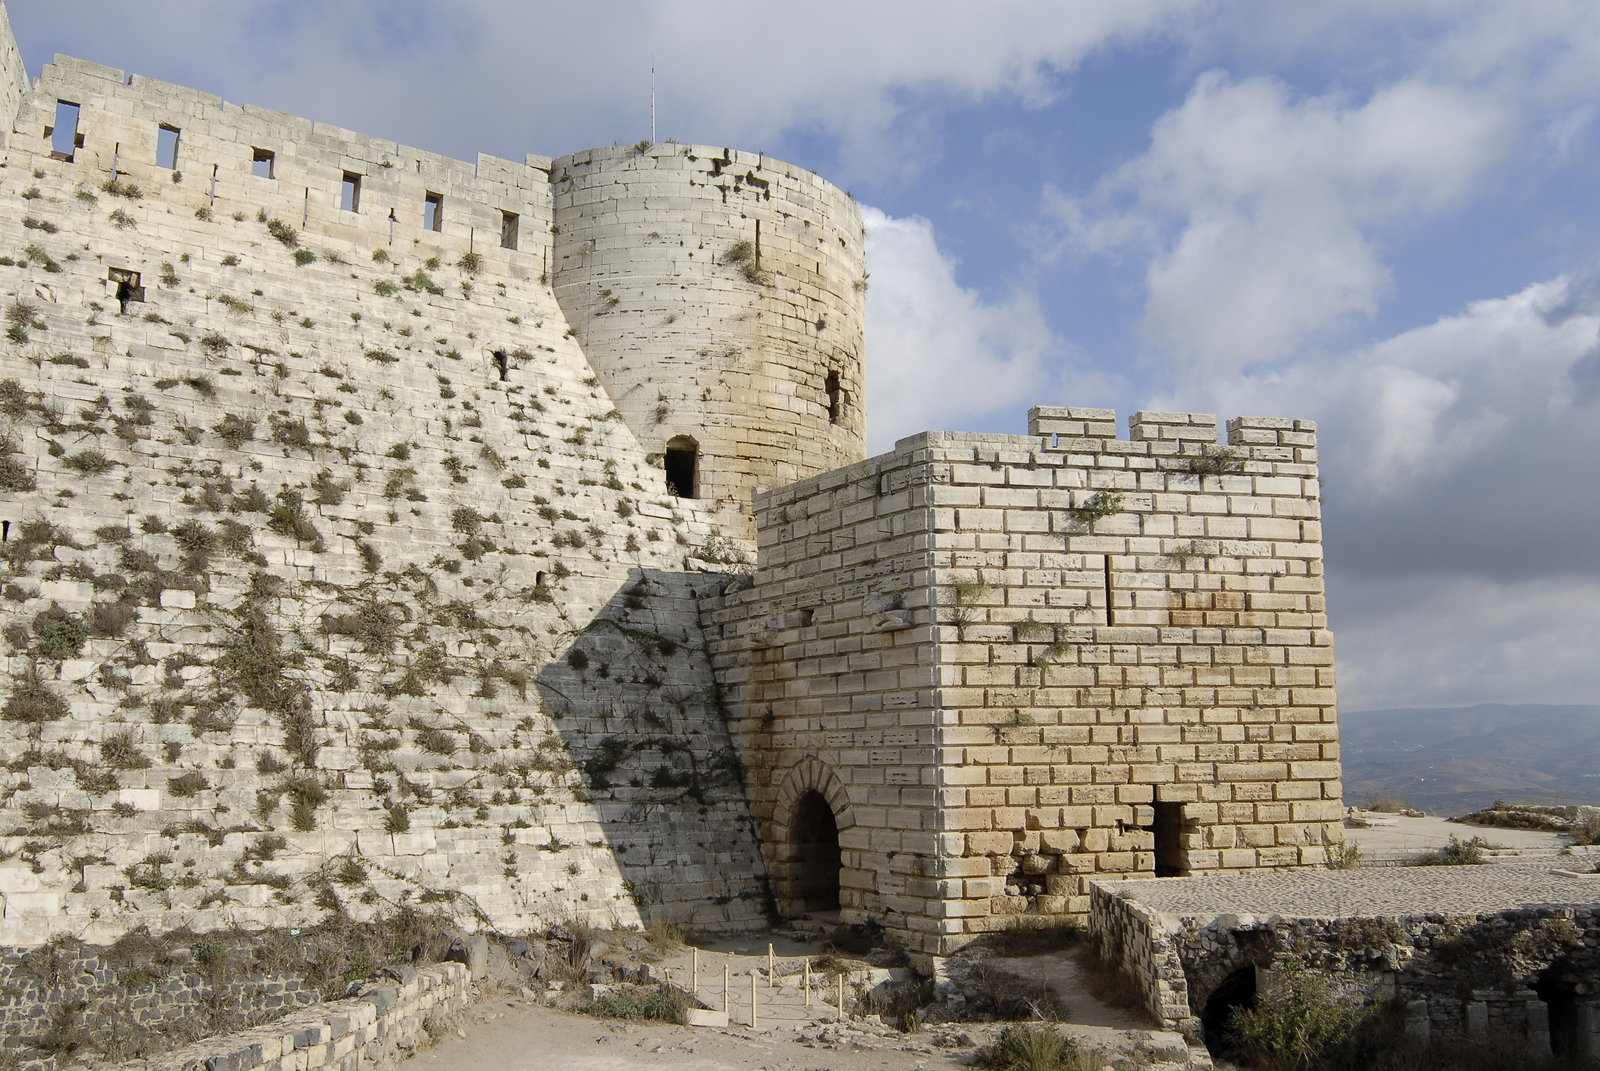 Vue extérieure de la tour-porte du Crac des Chevaliers (Krak)